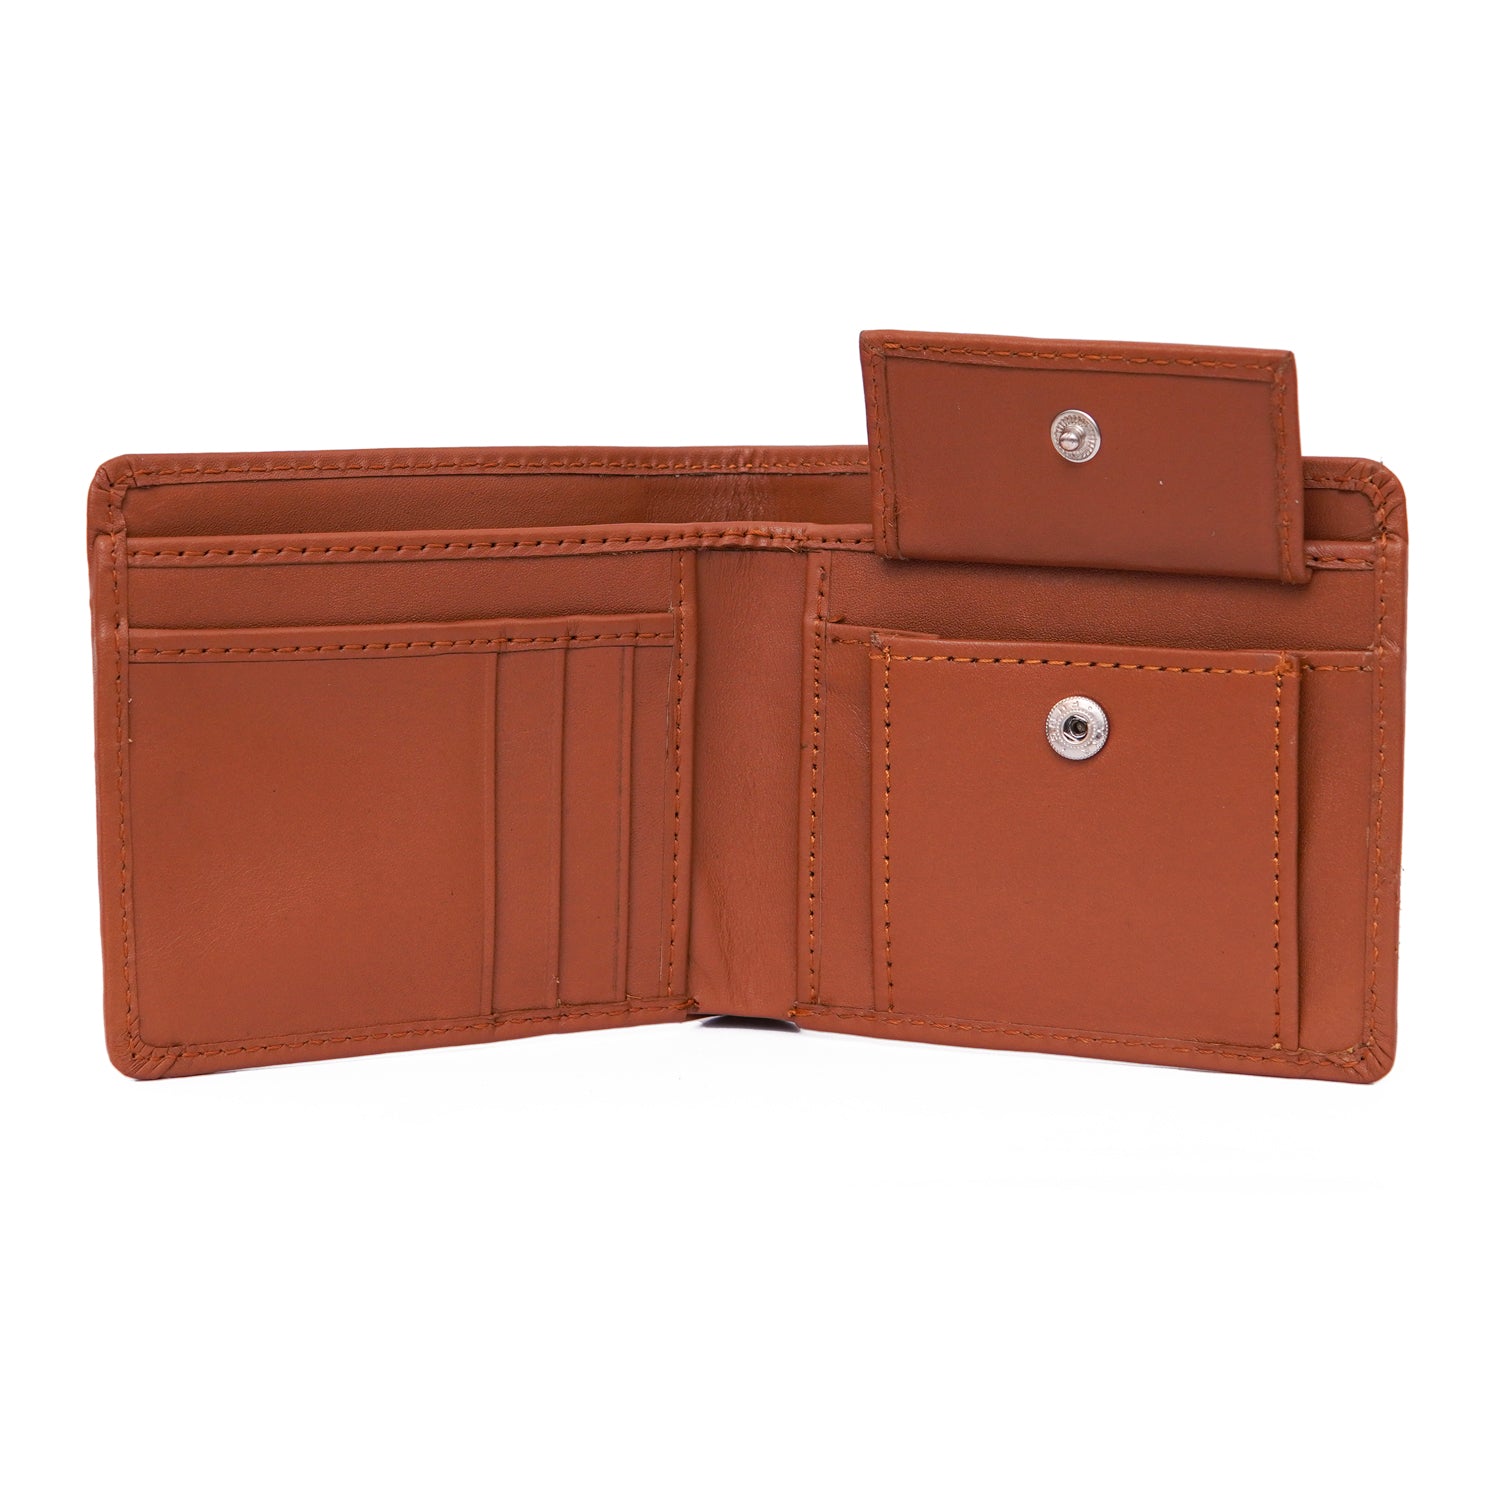 Paris Leather Wallet – Tan